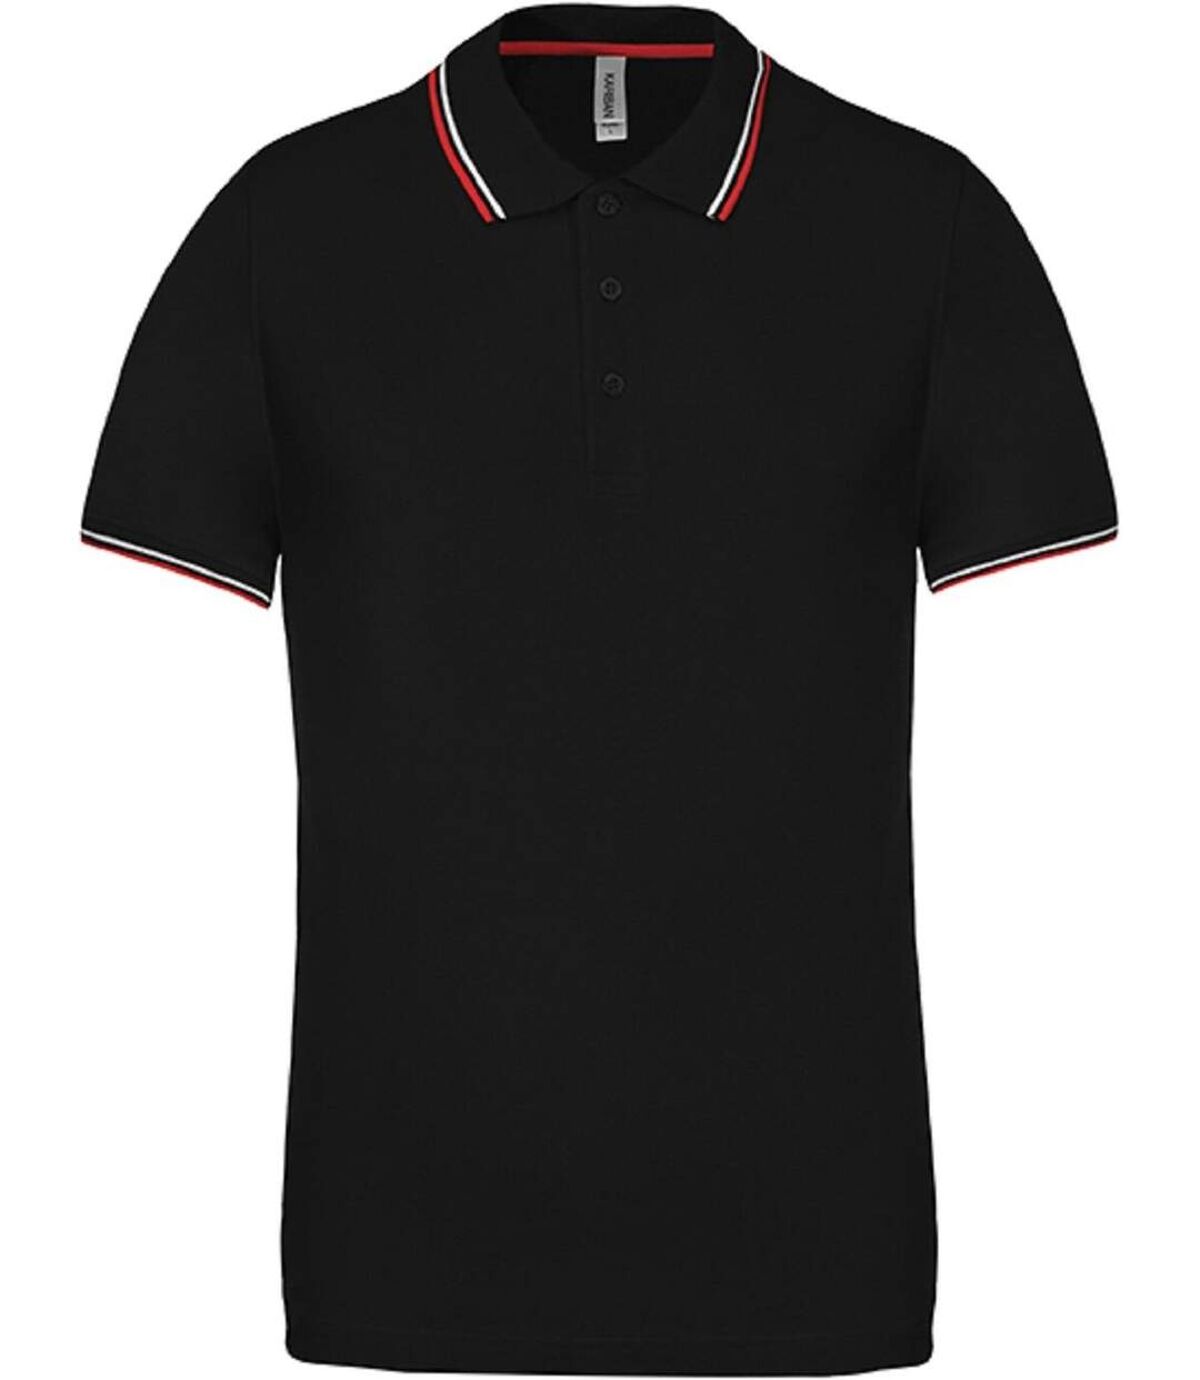 Polo bandes contrastées homme - K250 - noir - rouge-blanc - manches courtes